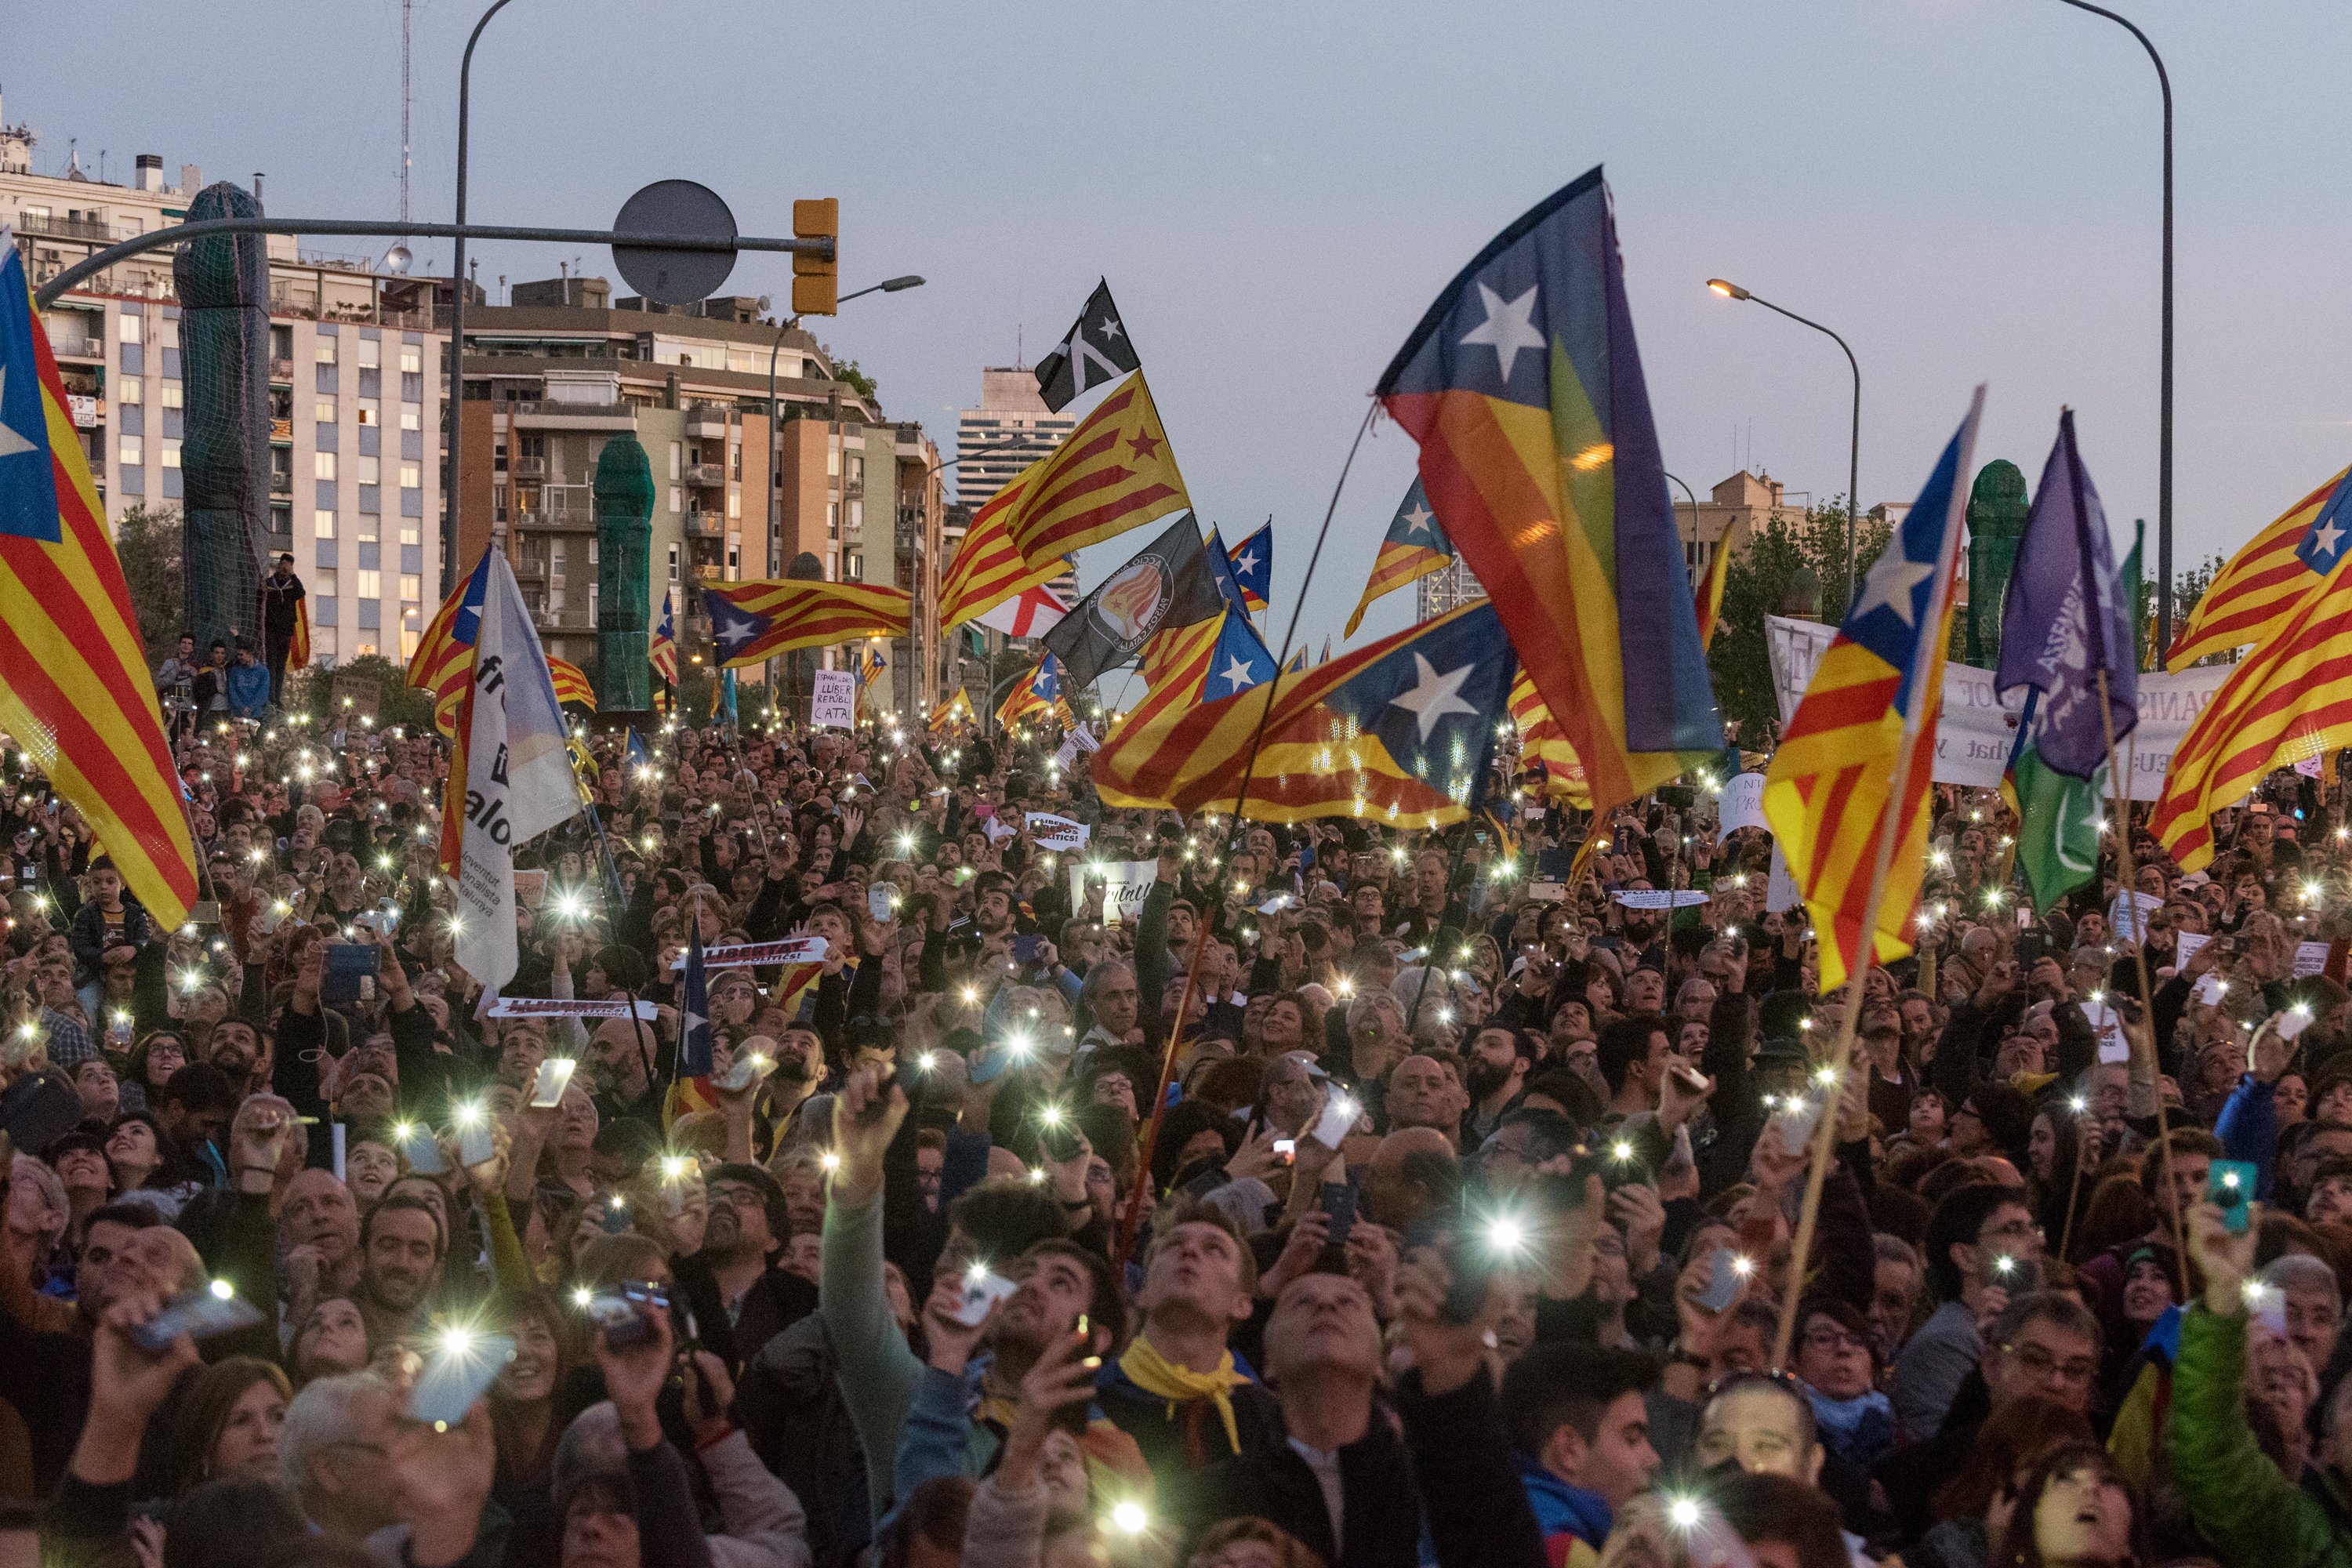 Pla obert, pla tancat: la diferència entre la premsa catalana i l’espanyola